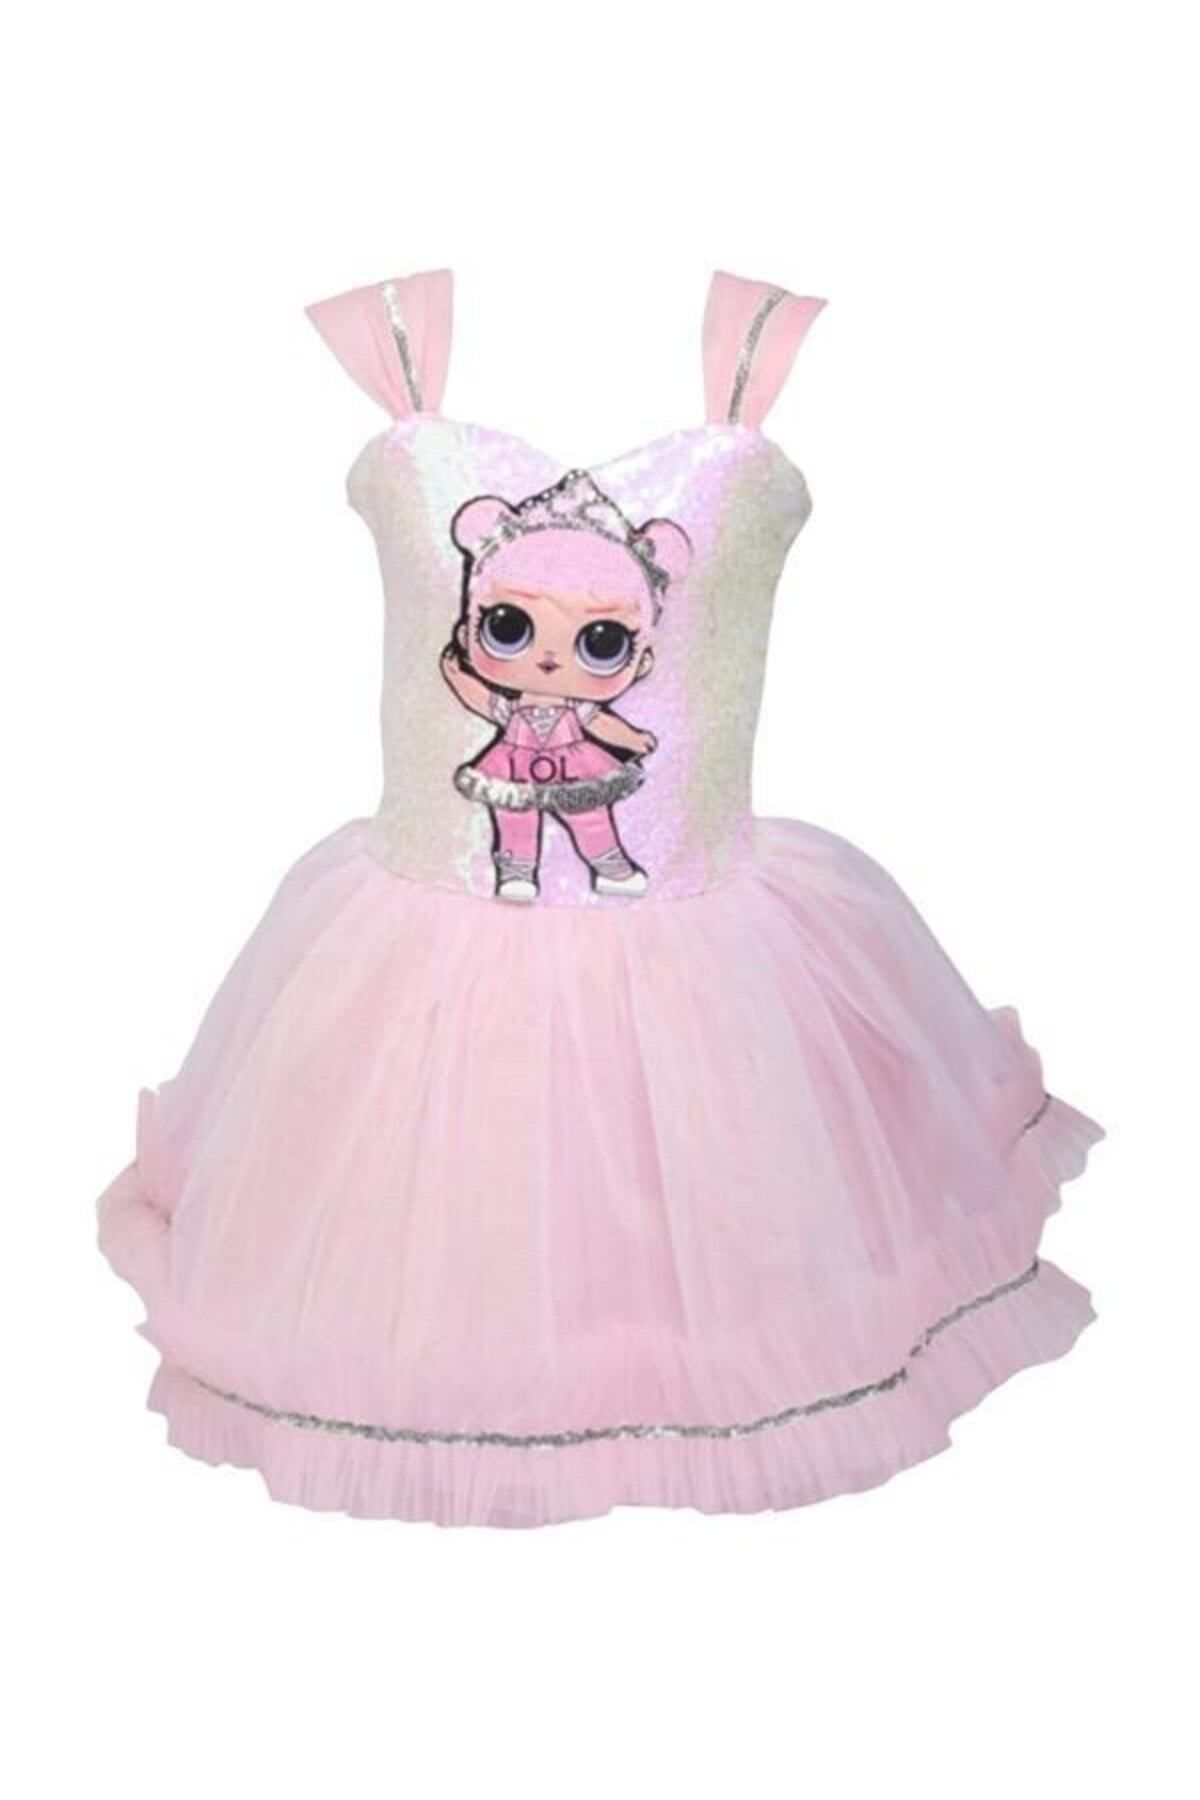 fabrikoloji Lol Bebek Kostümü Kız Çocuk Pembe Lol Bebek Elbise Kıyafeti